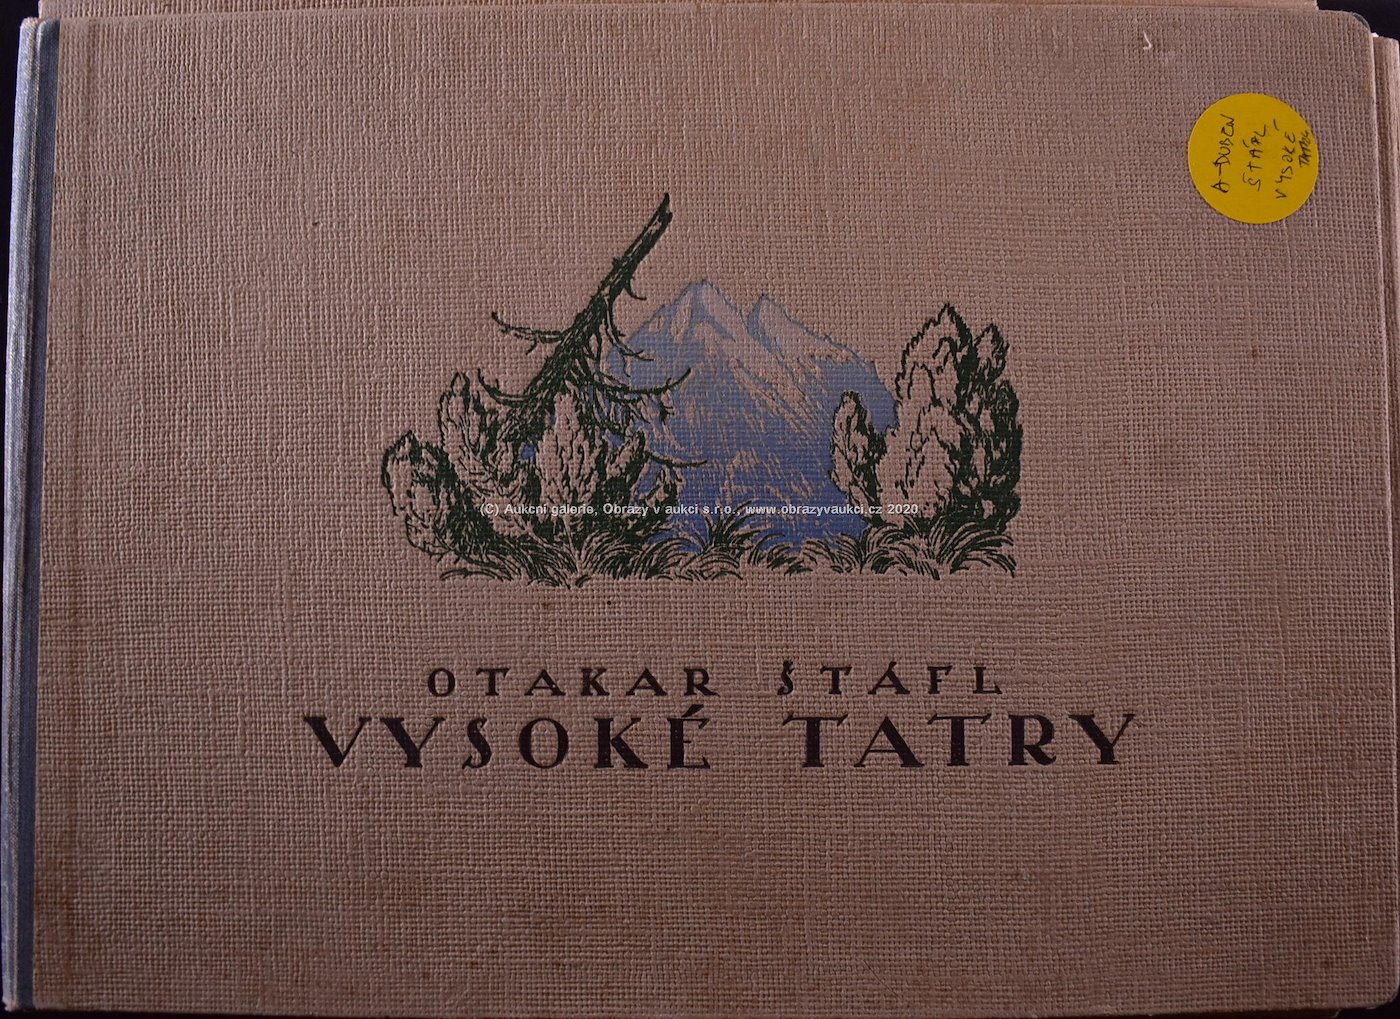 Otakar Štáfl - Vysoké Tatry